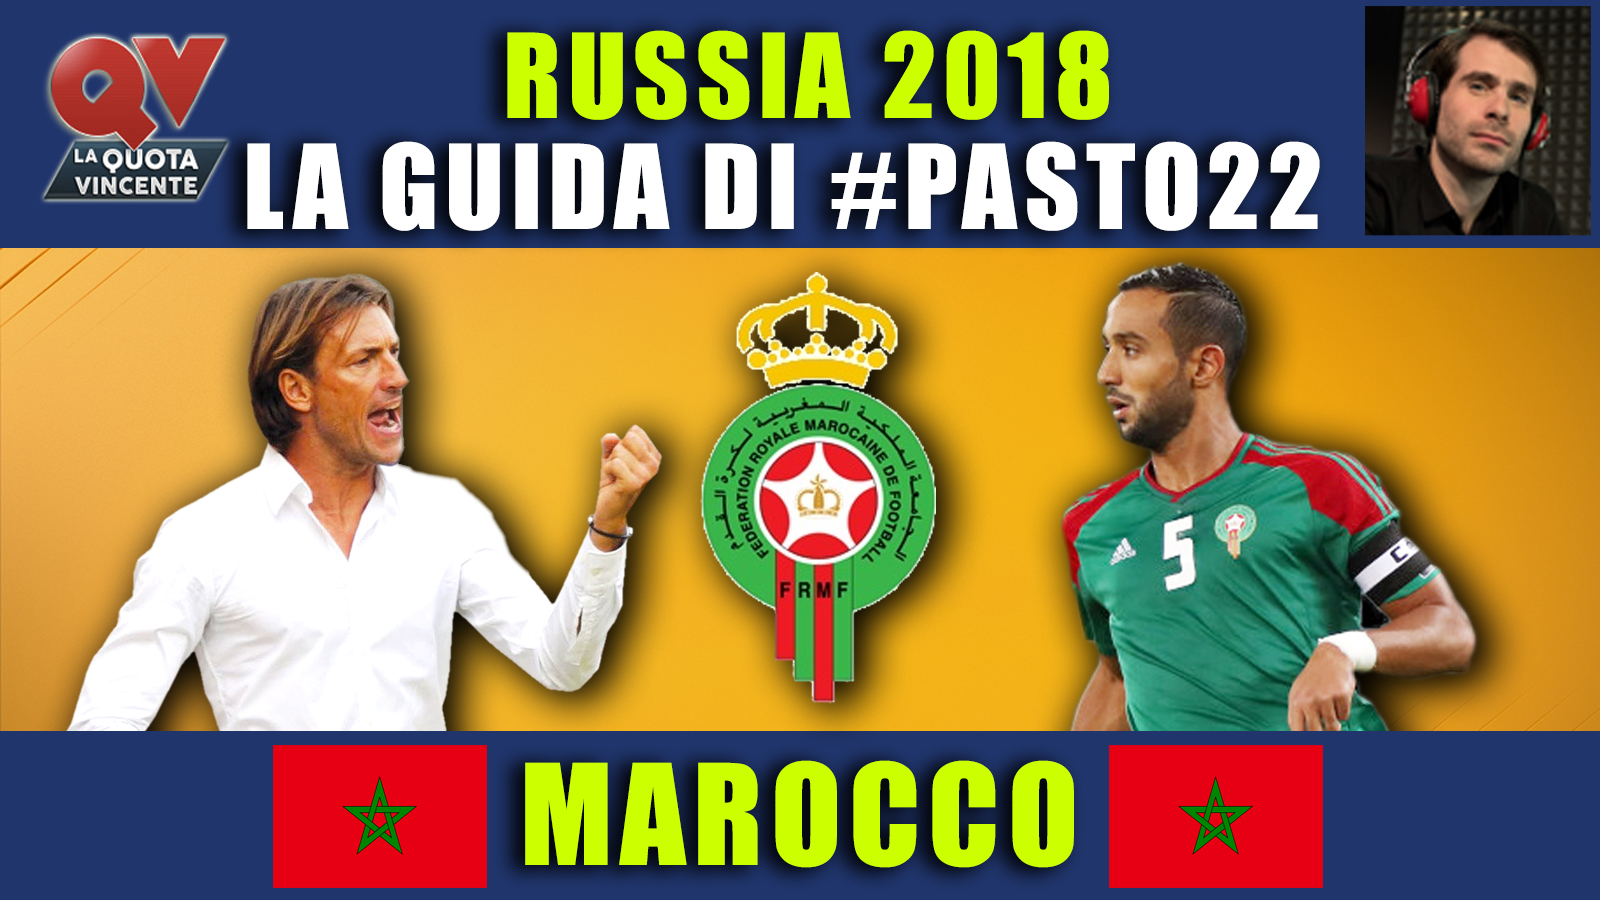 Guida Mondiali Russia 2018 Marocco